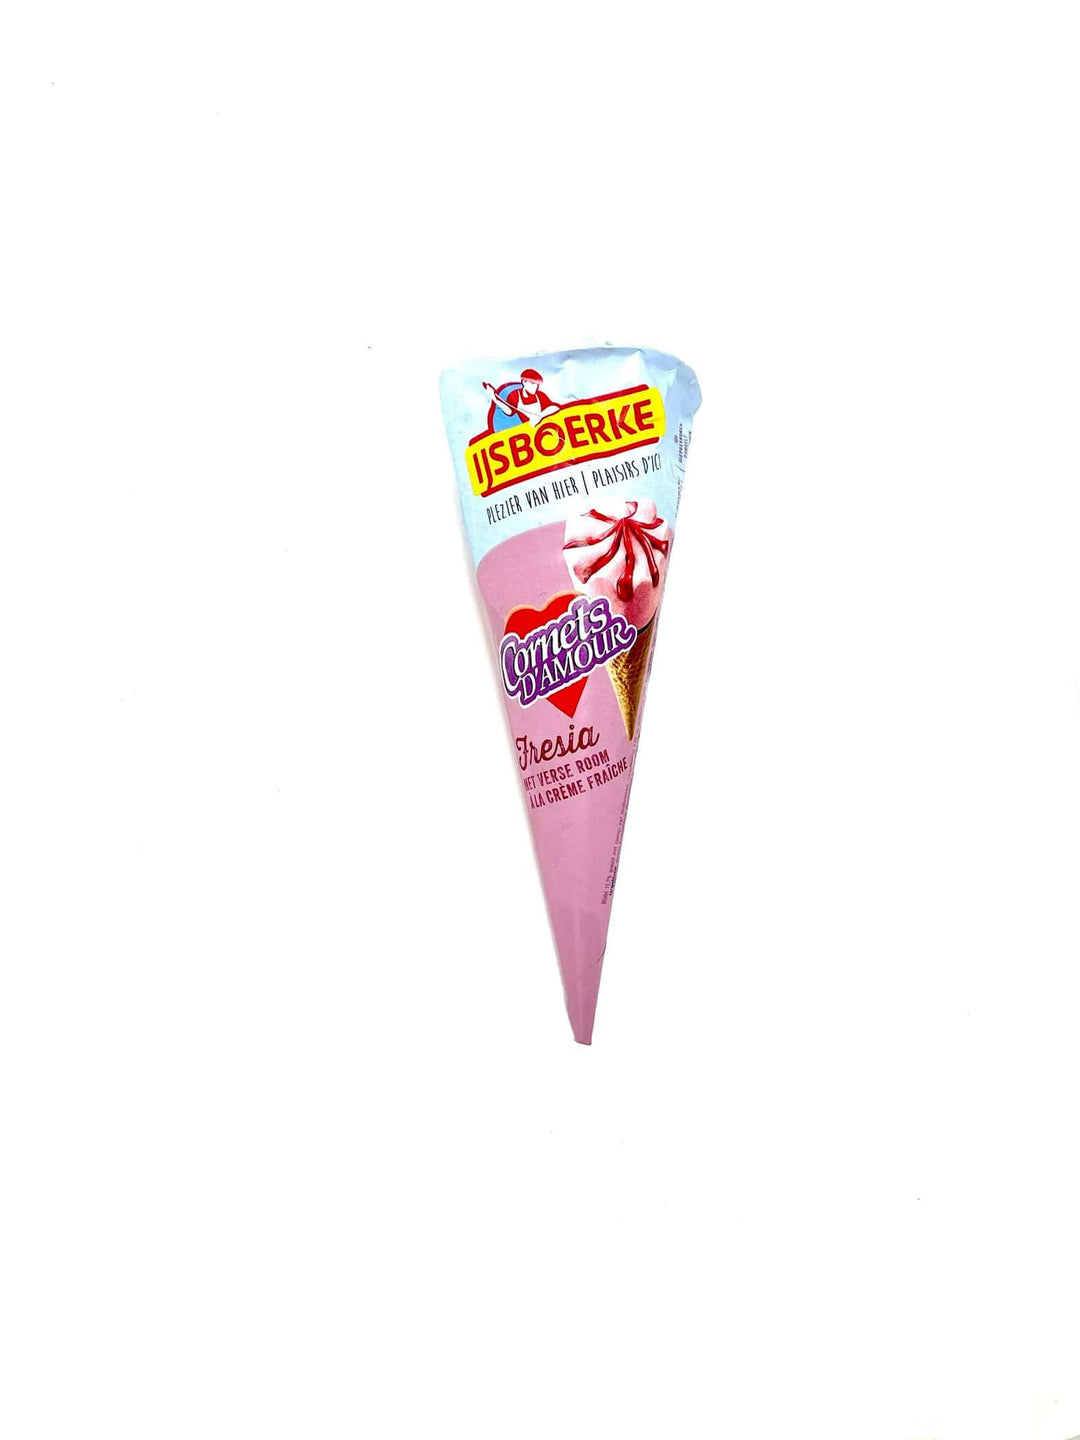 Ijsboerke Strawberry Cornet Ice cream 120ml